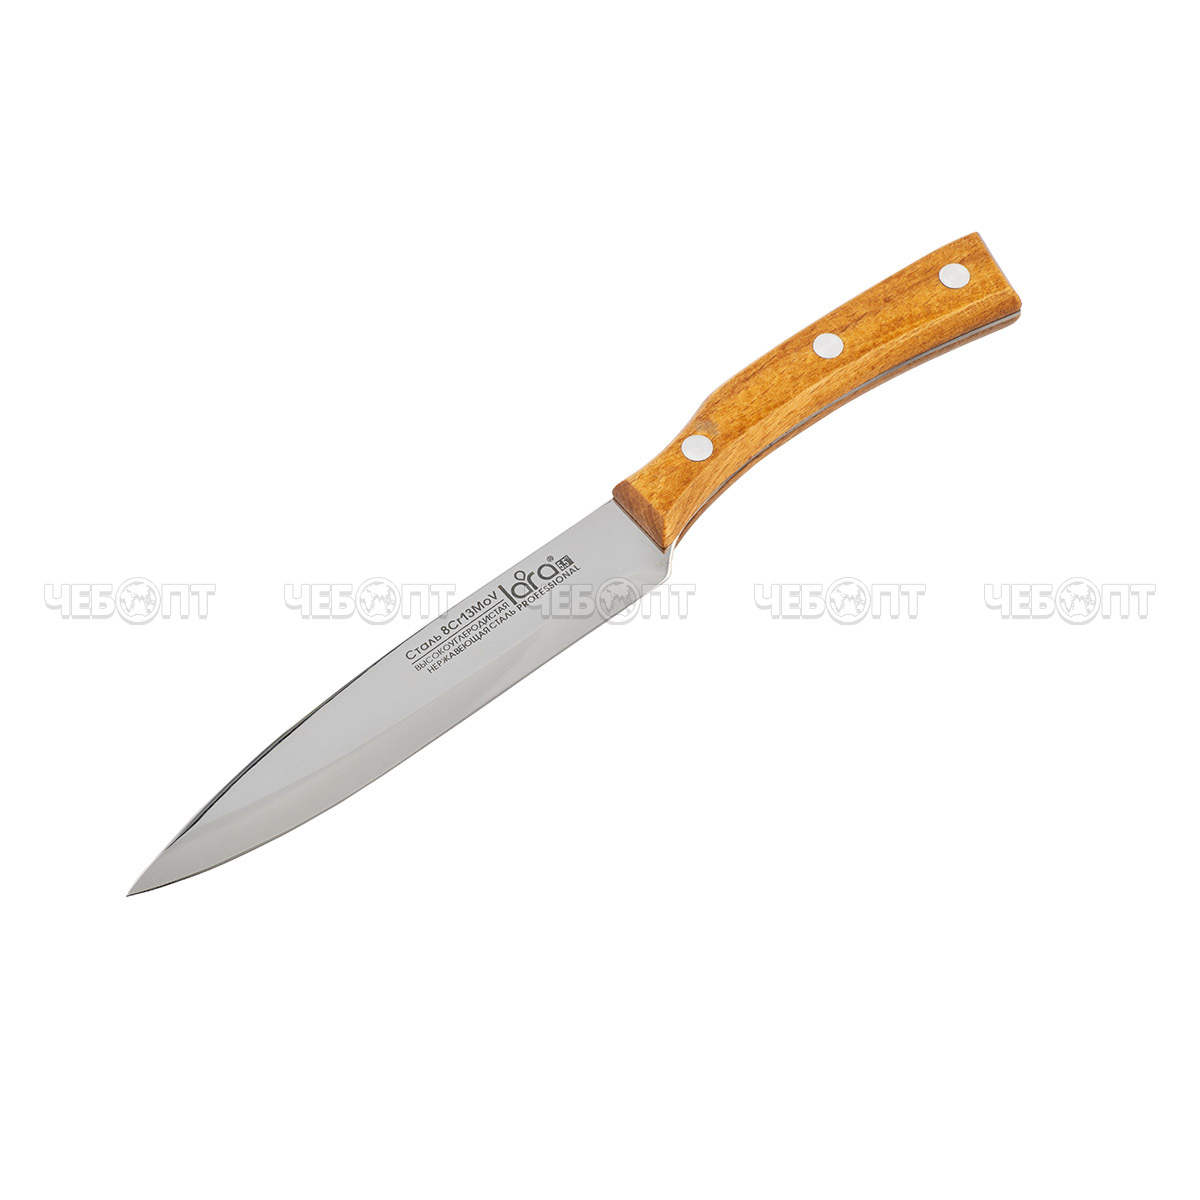 Нож универсальный 14 см/1.5 мм LARA деревянная буковая ручка, сталь 8CR13Mov (блистер)  LR05-61 [72]. ЧЕБОПТ.